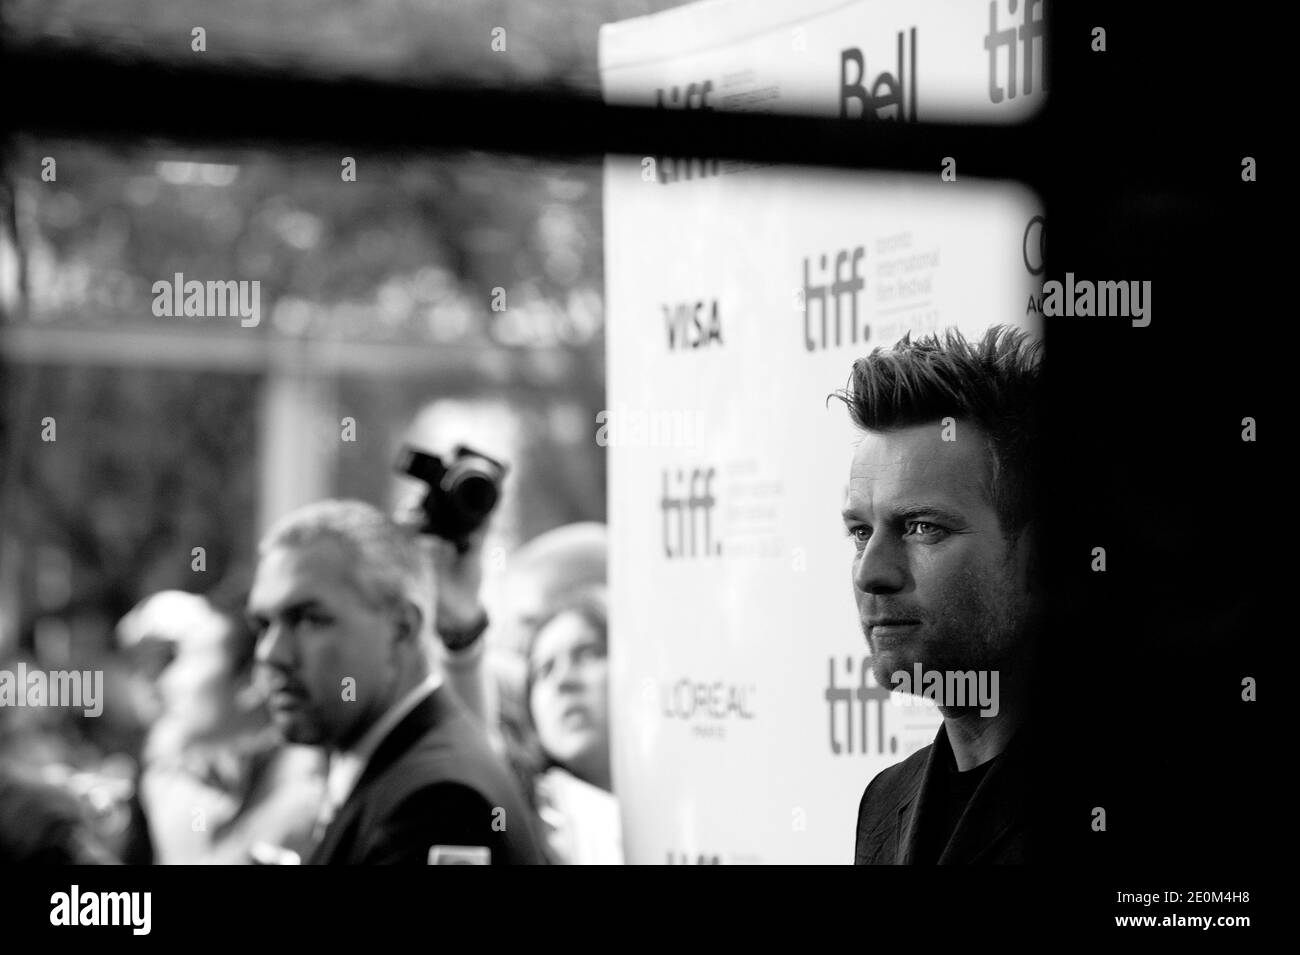 Ewan McGregor asiste a la proyección "lo imposible" durante el 37º Festival Internacional de Cine de Toronto TIFF, en Toronto, Canadá, el 9 de septiembre de 2012. Foto de Lionel Hahn/ABACAPRESS.COM Foto de stock